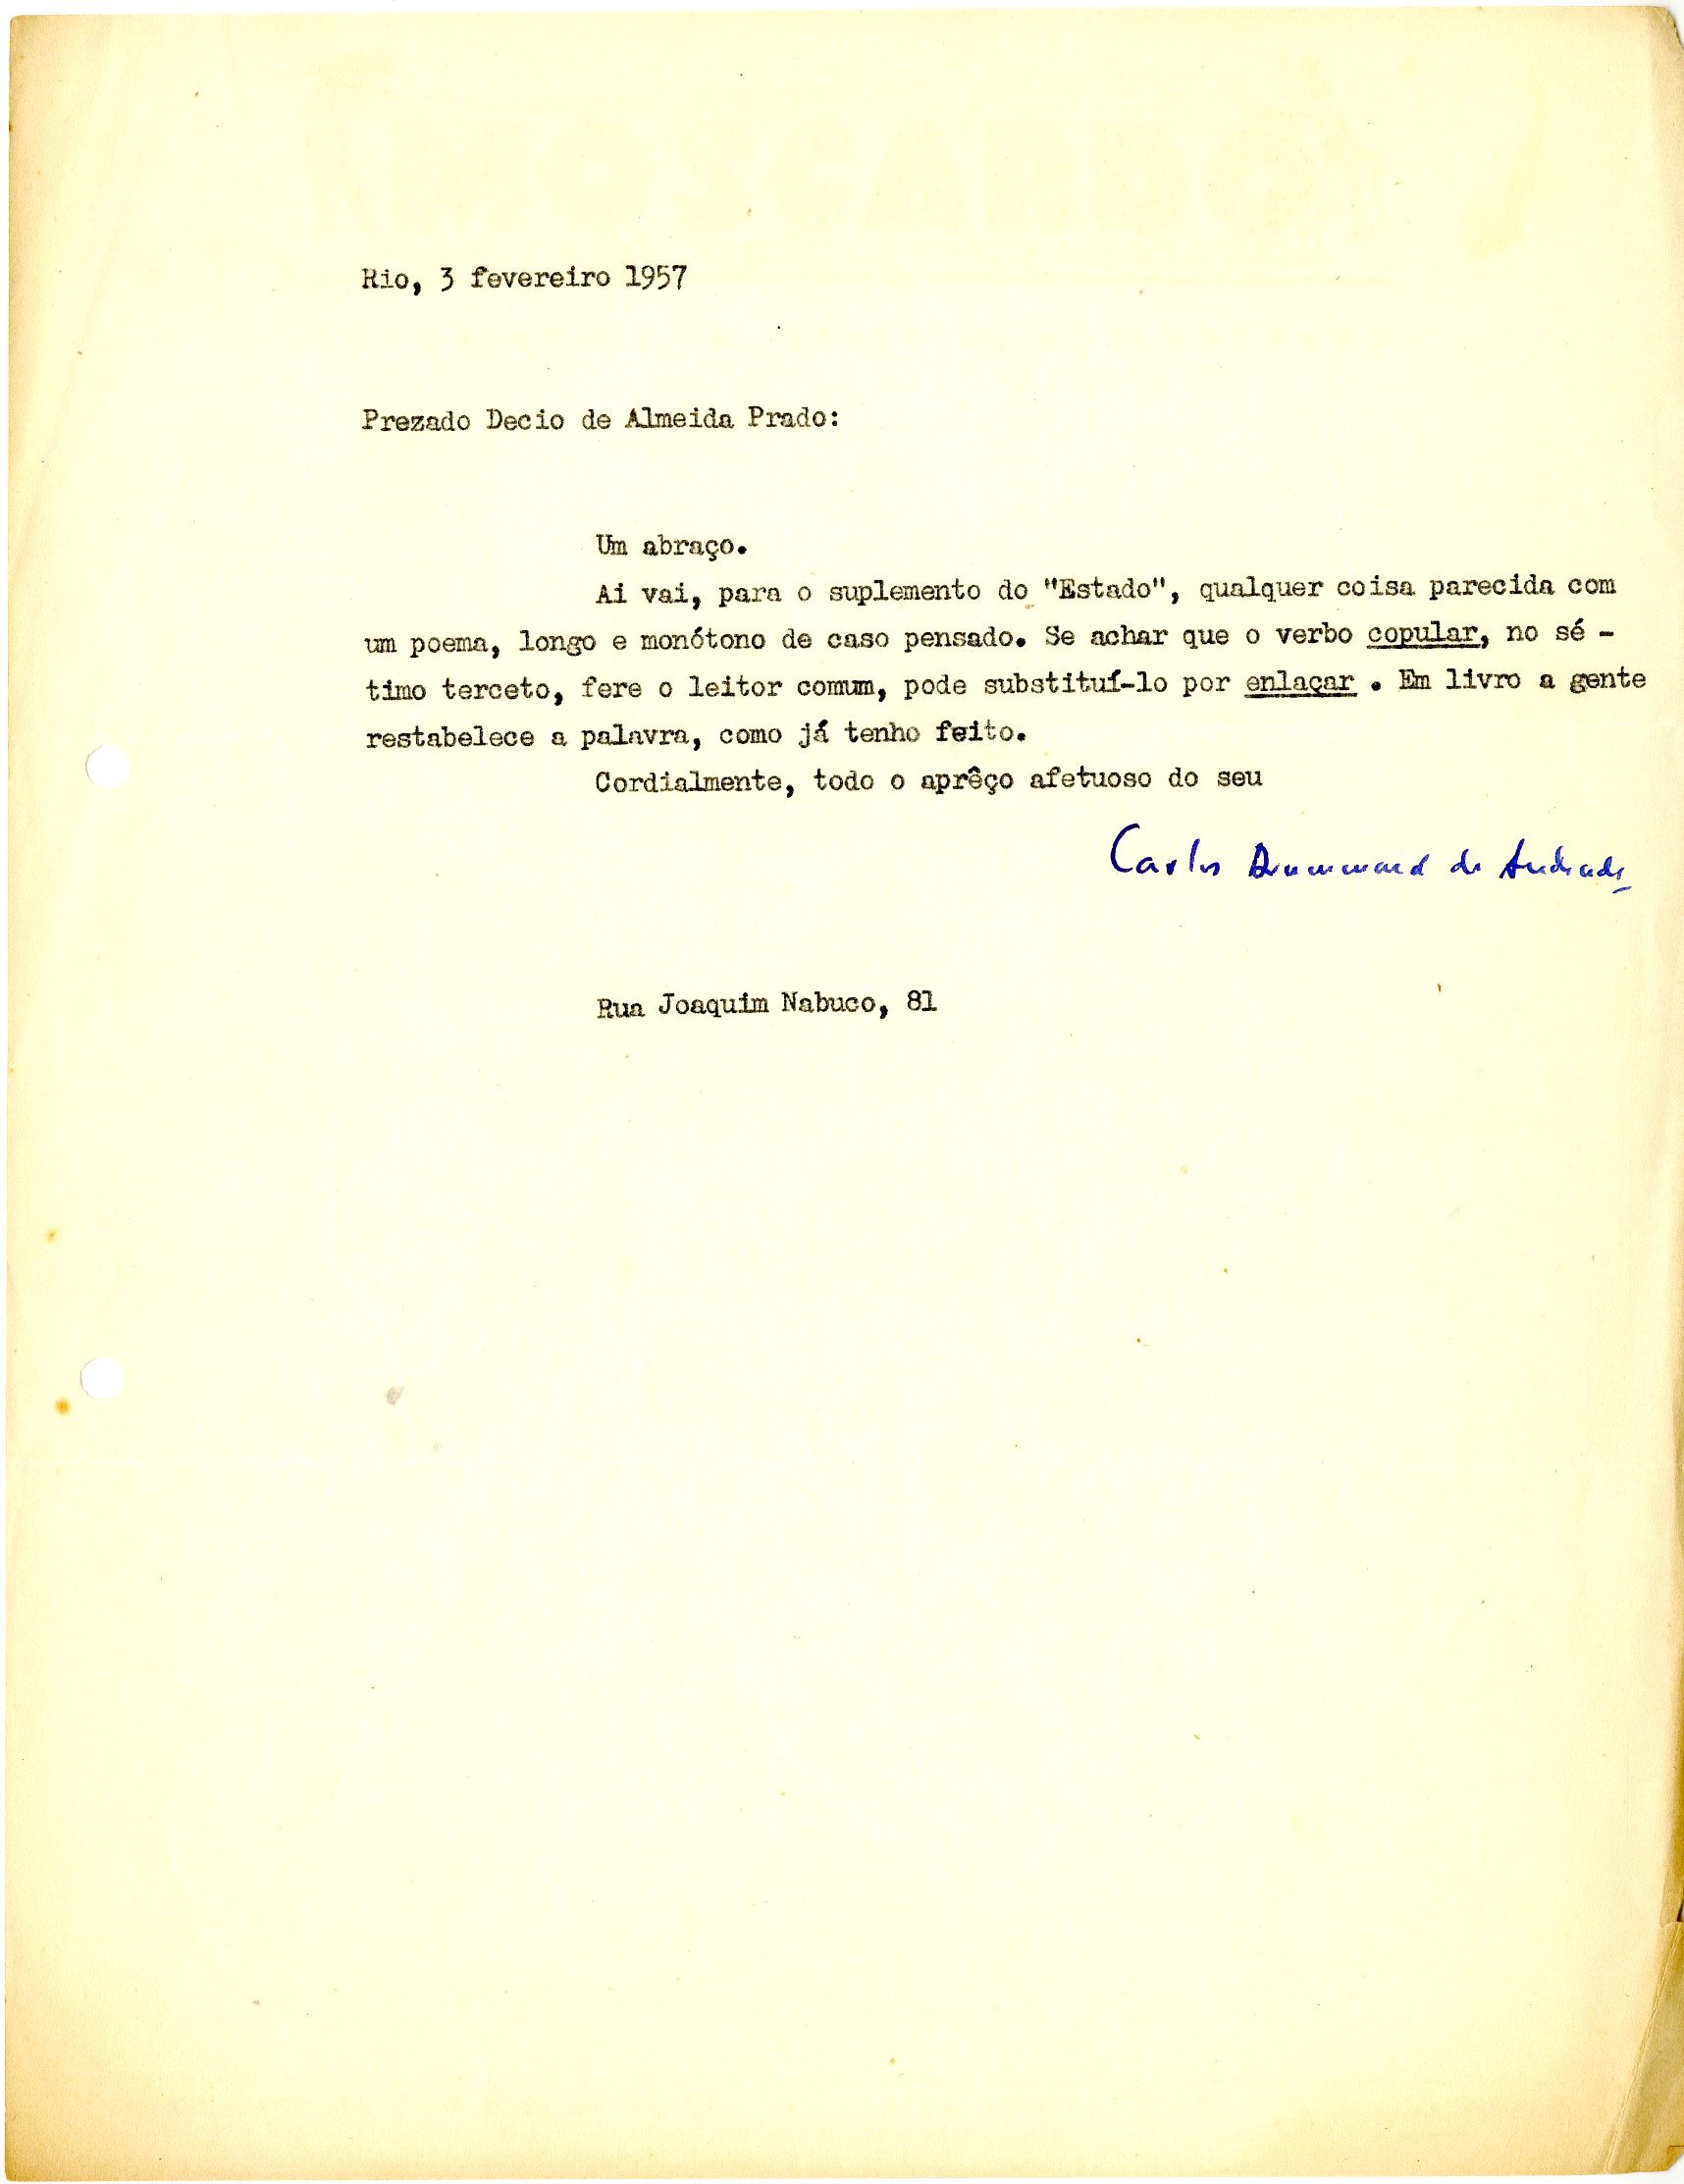 Bilhete de Carlos Drummond de Andrade a Decio de Almeida Prado, 3 de fevereiro de 1957. Arquivo Decio de Almeida Prado/ Acervo IMS